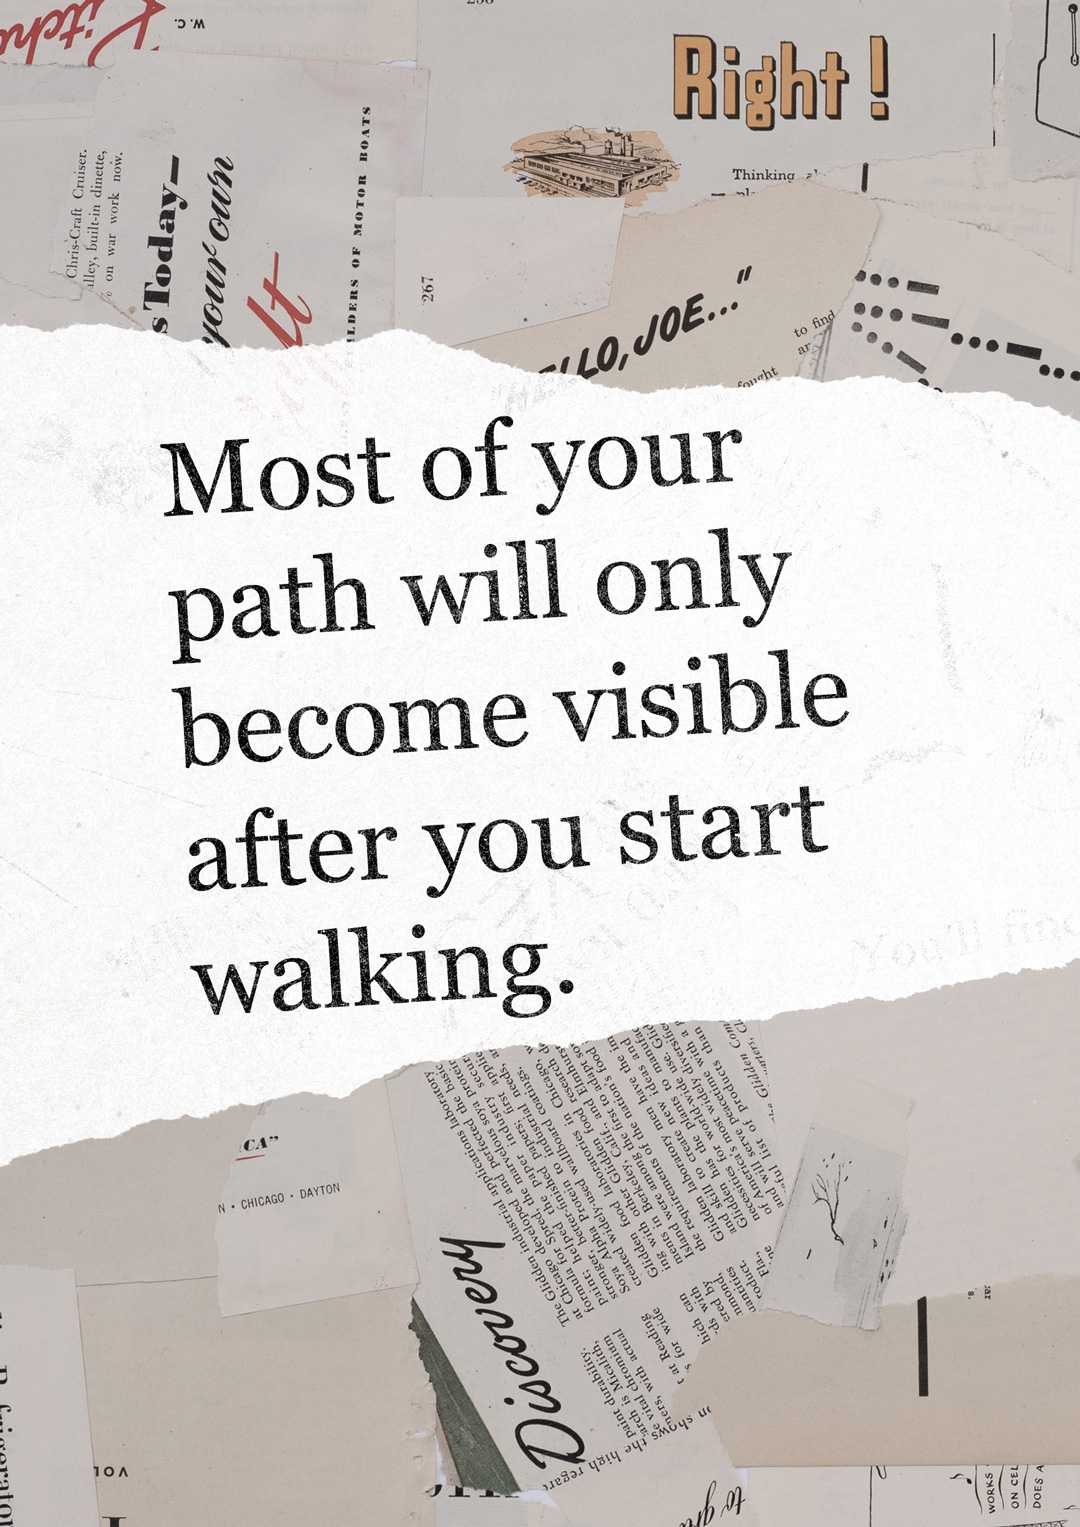 sebagian besar jalanmu hanya akan terlihat setelah kamu mulai berjalan